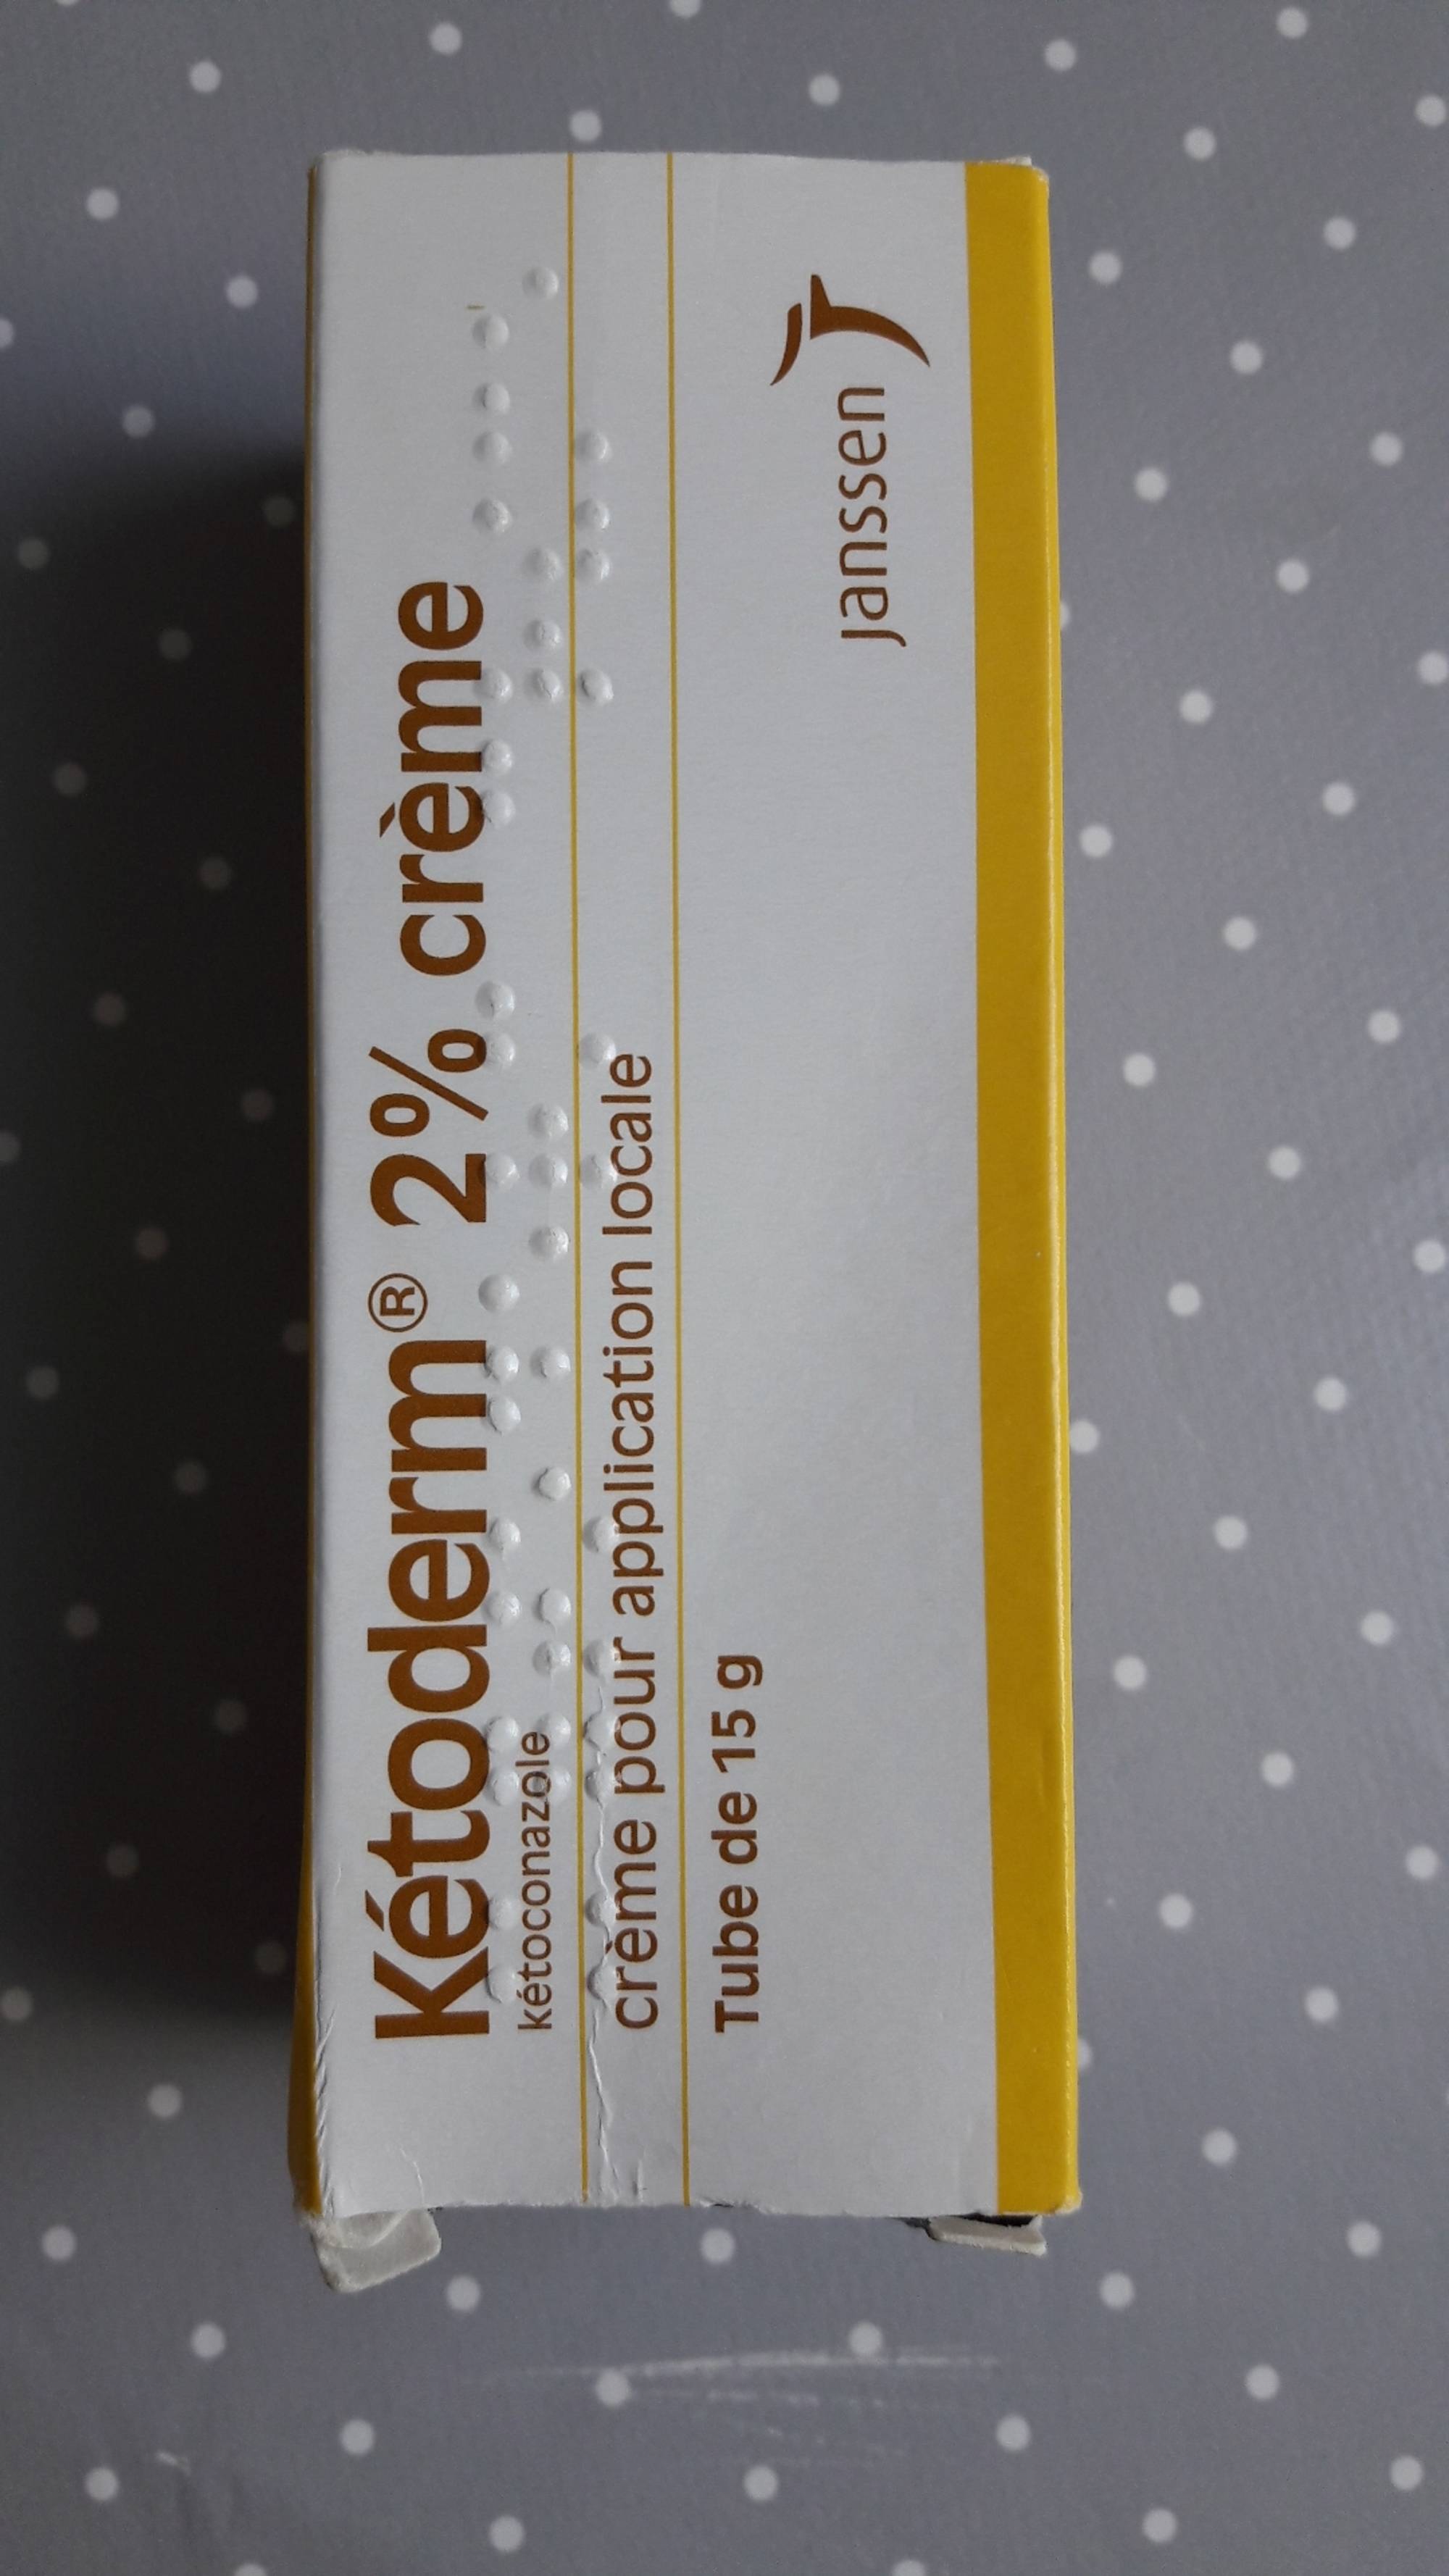 KÉTODERM - Kétoconazole - Crème pour application locale